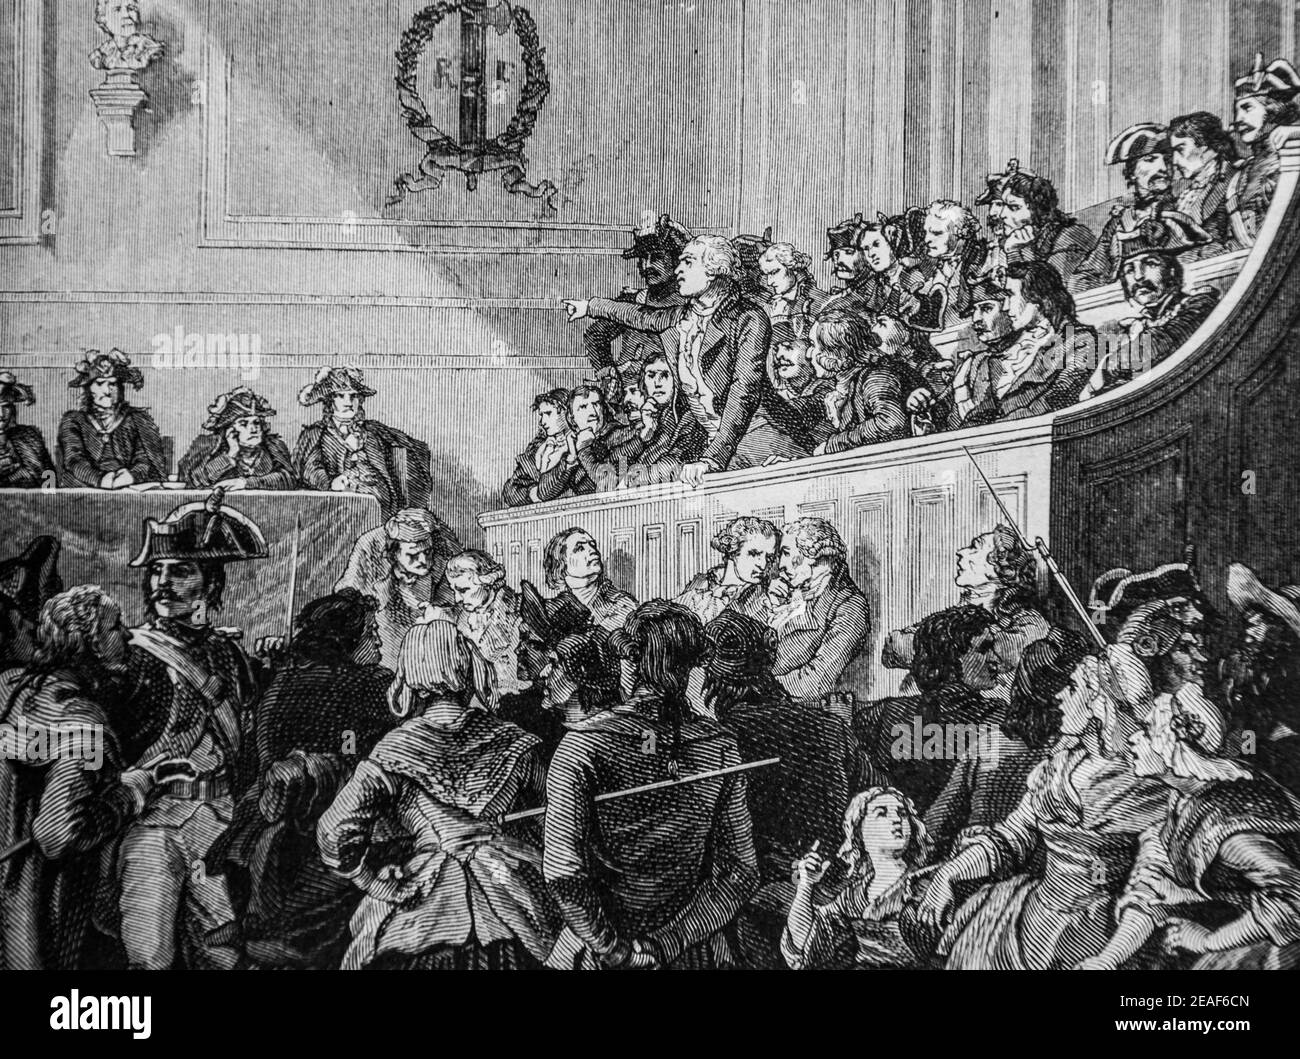 danton et ses amis au tribunal revolutionnaire, 1792-1804,histoire de france par henri martin,editeur furne 1850 Stock Photo